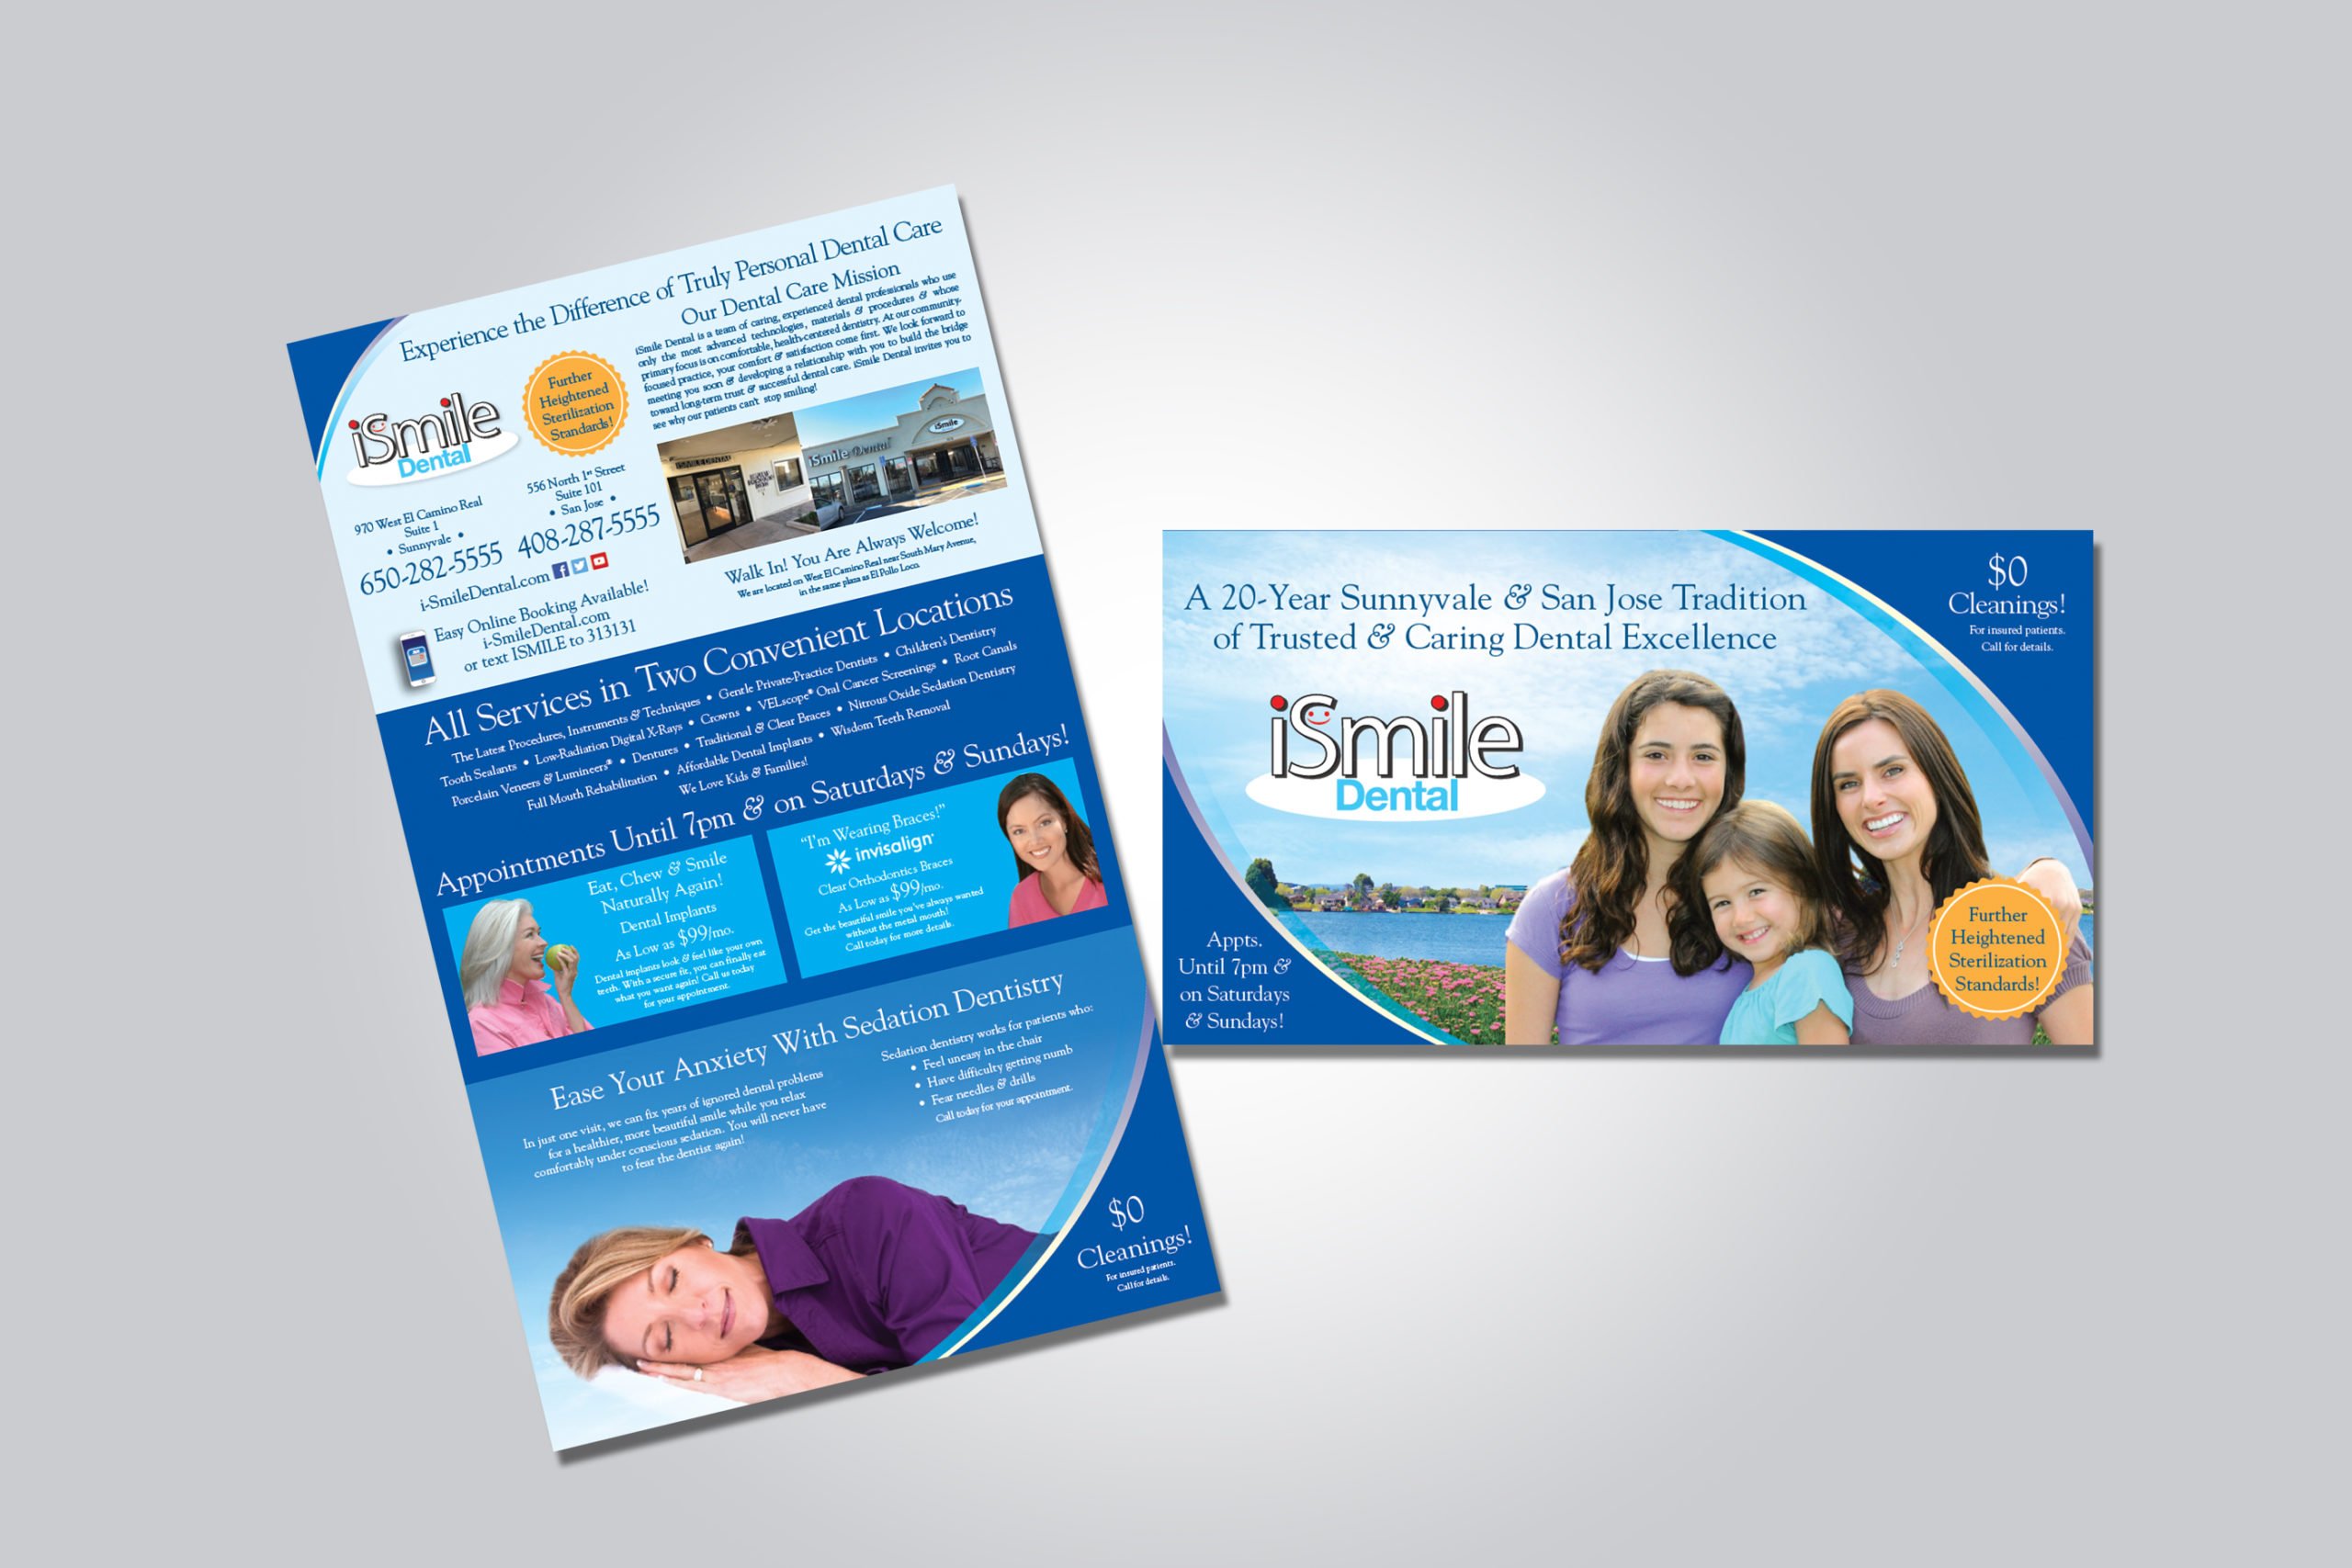 iSmile Dental Brochure